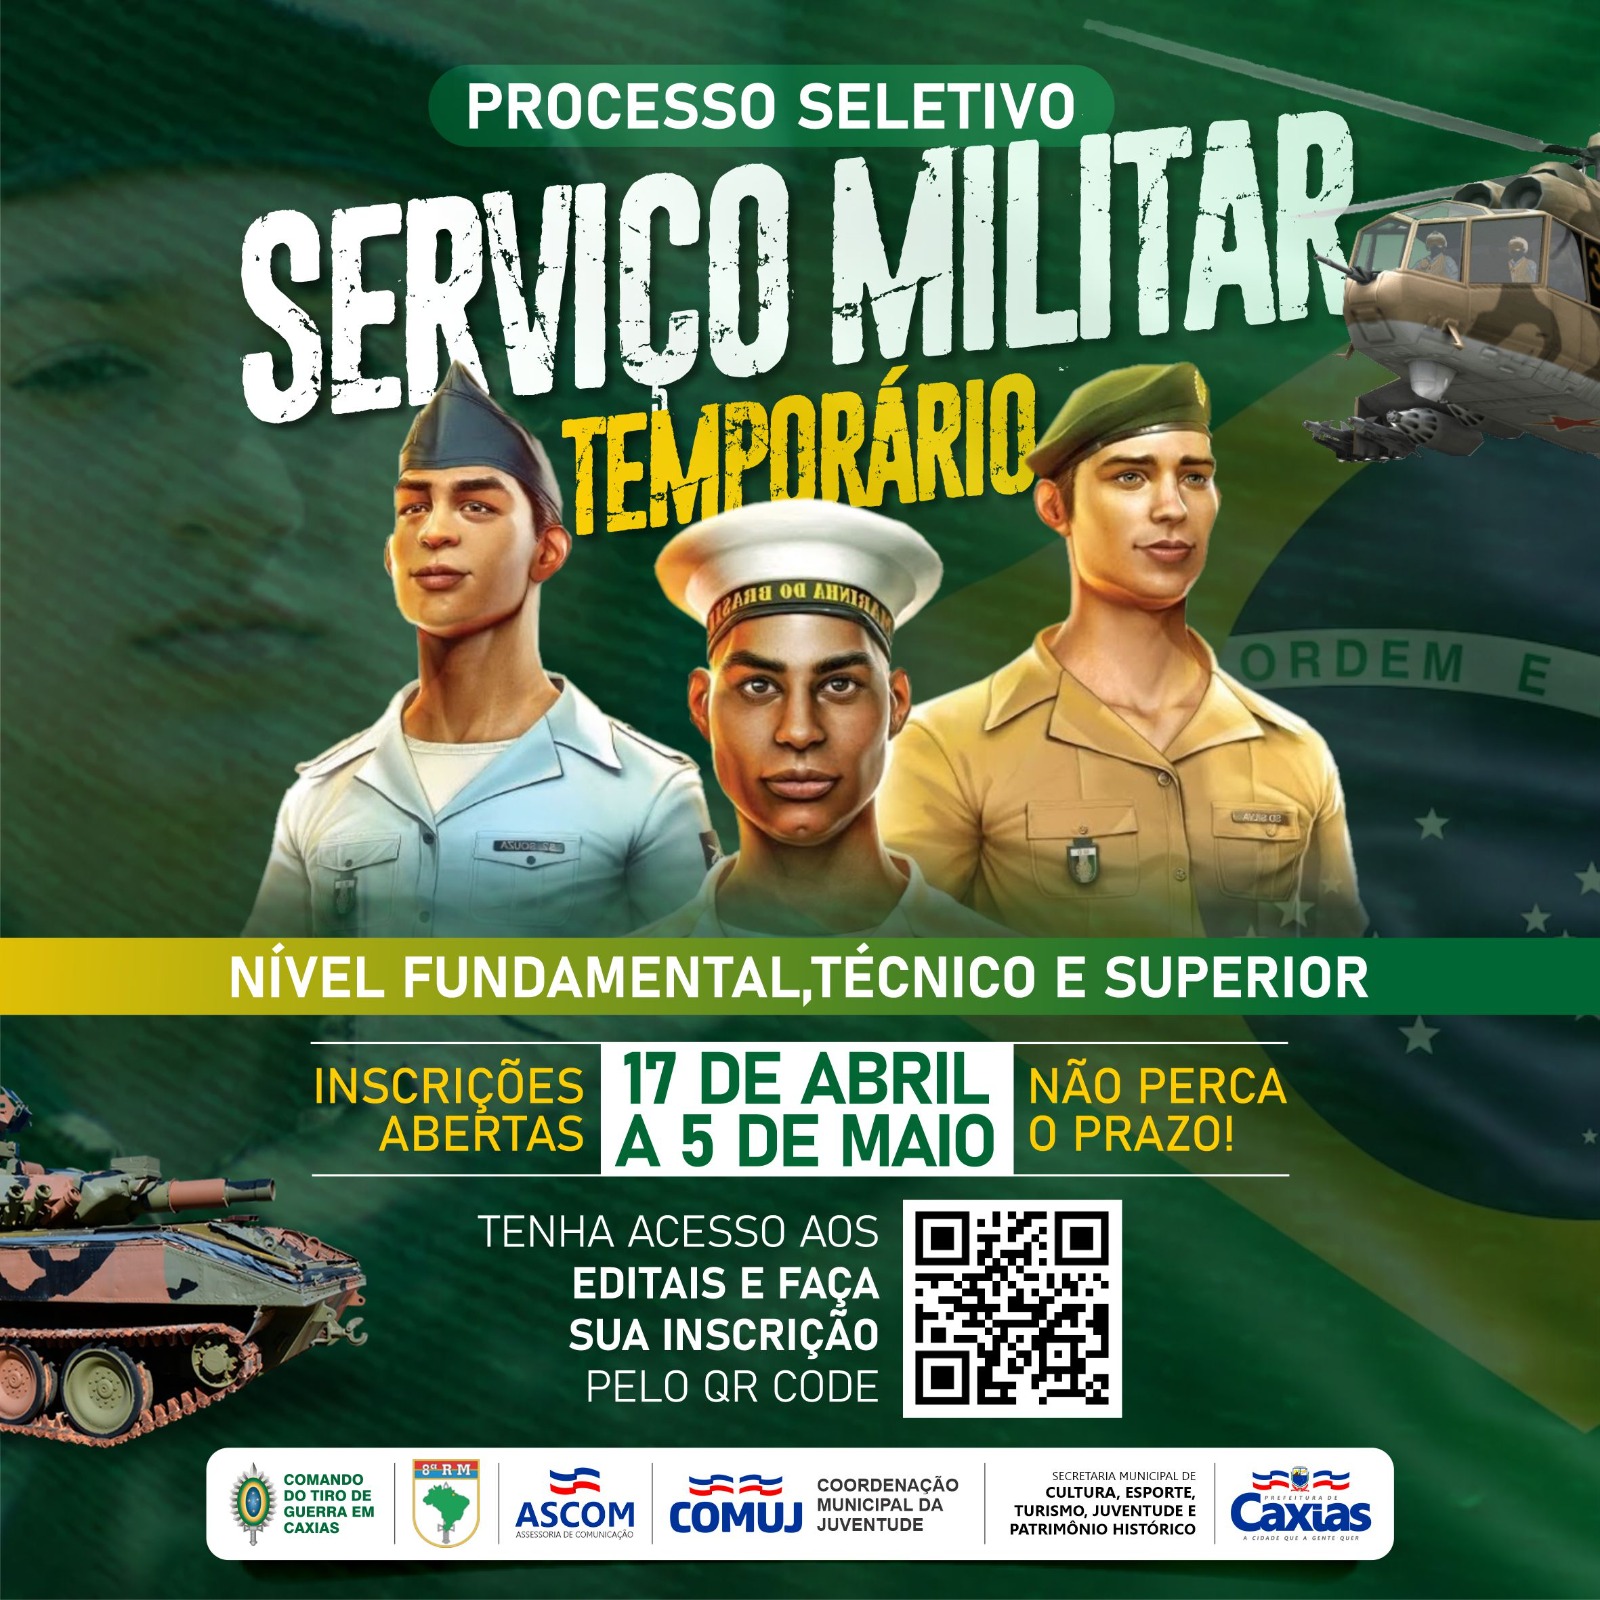 Vale a pena ser um OFICIAL TEMPORÁRIO no Exército Brasileiro? 